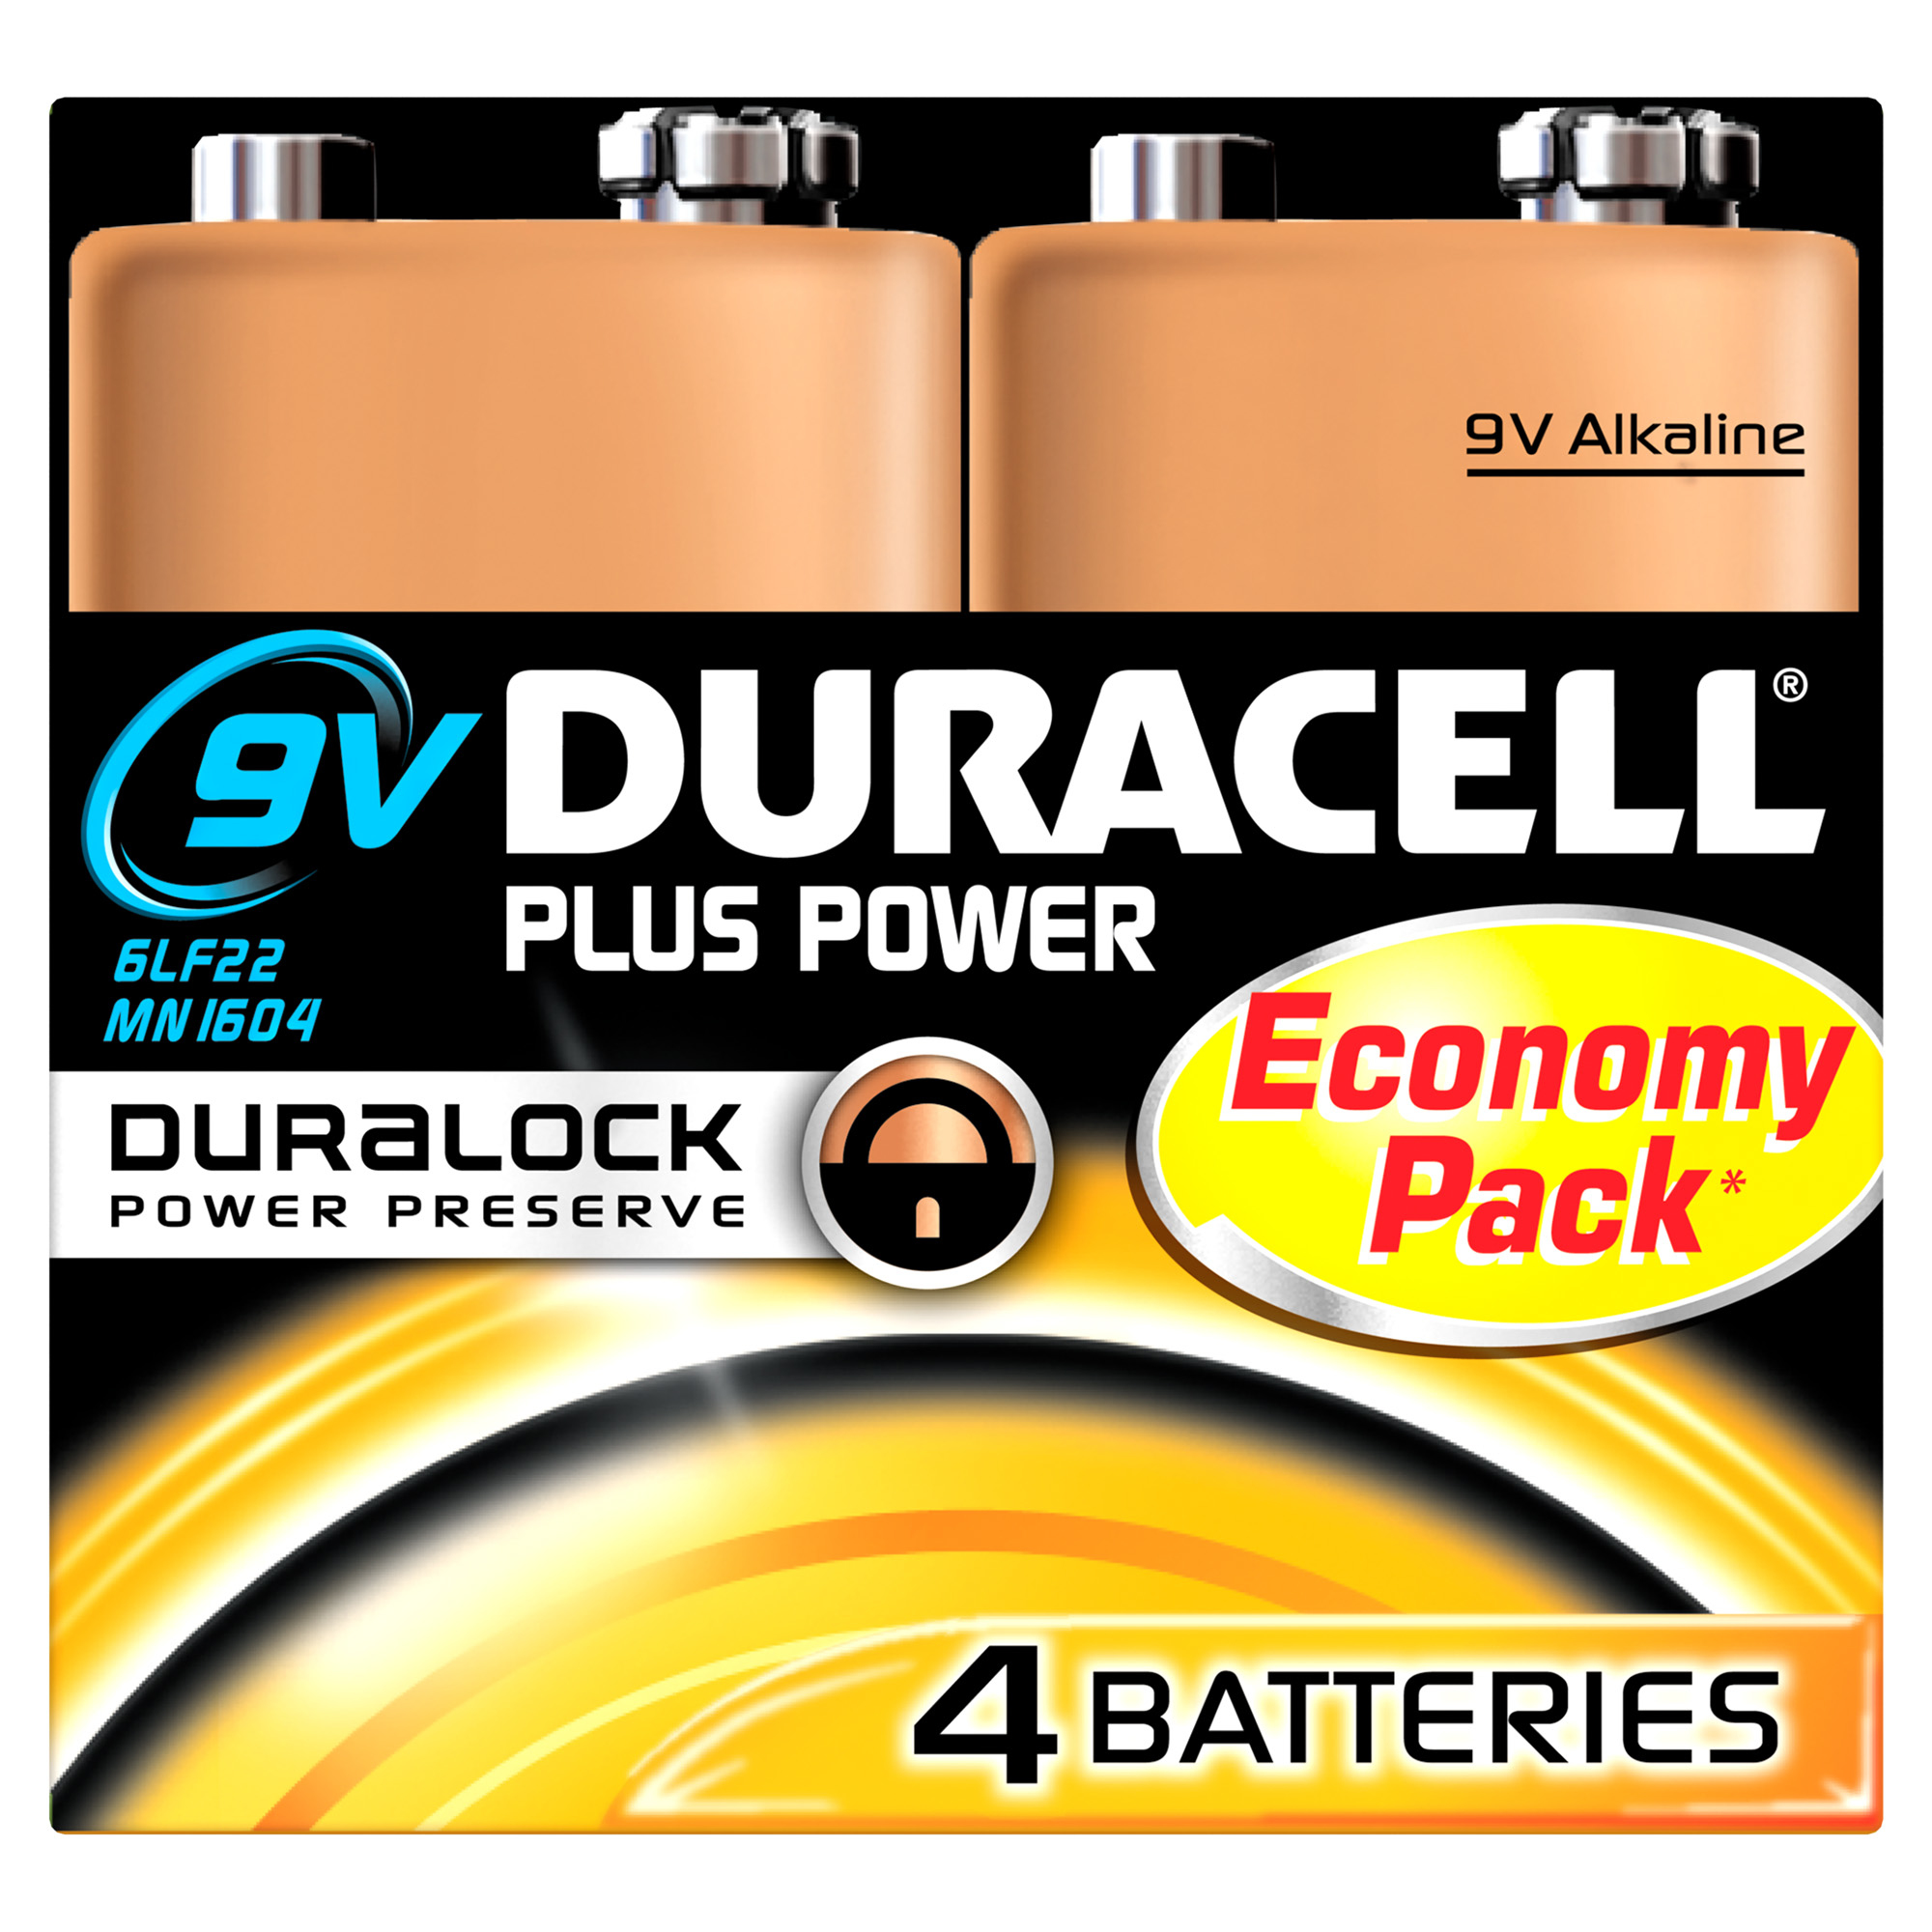 Duracell Plus Power Engangsbatteri 9V Alkaline